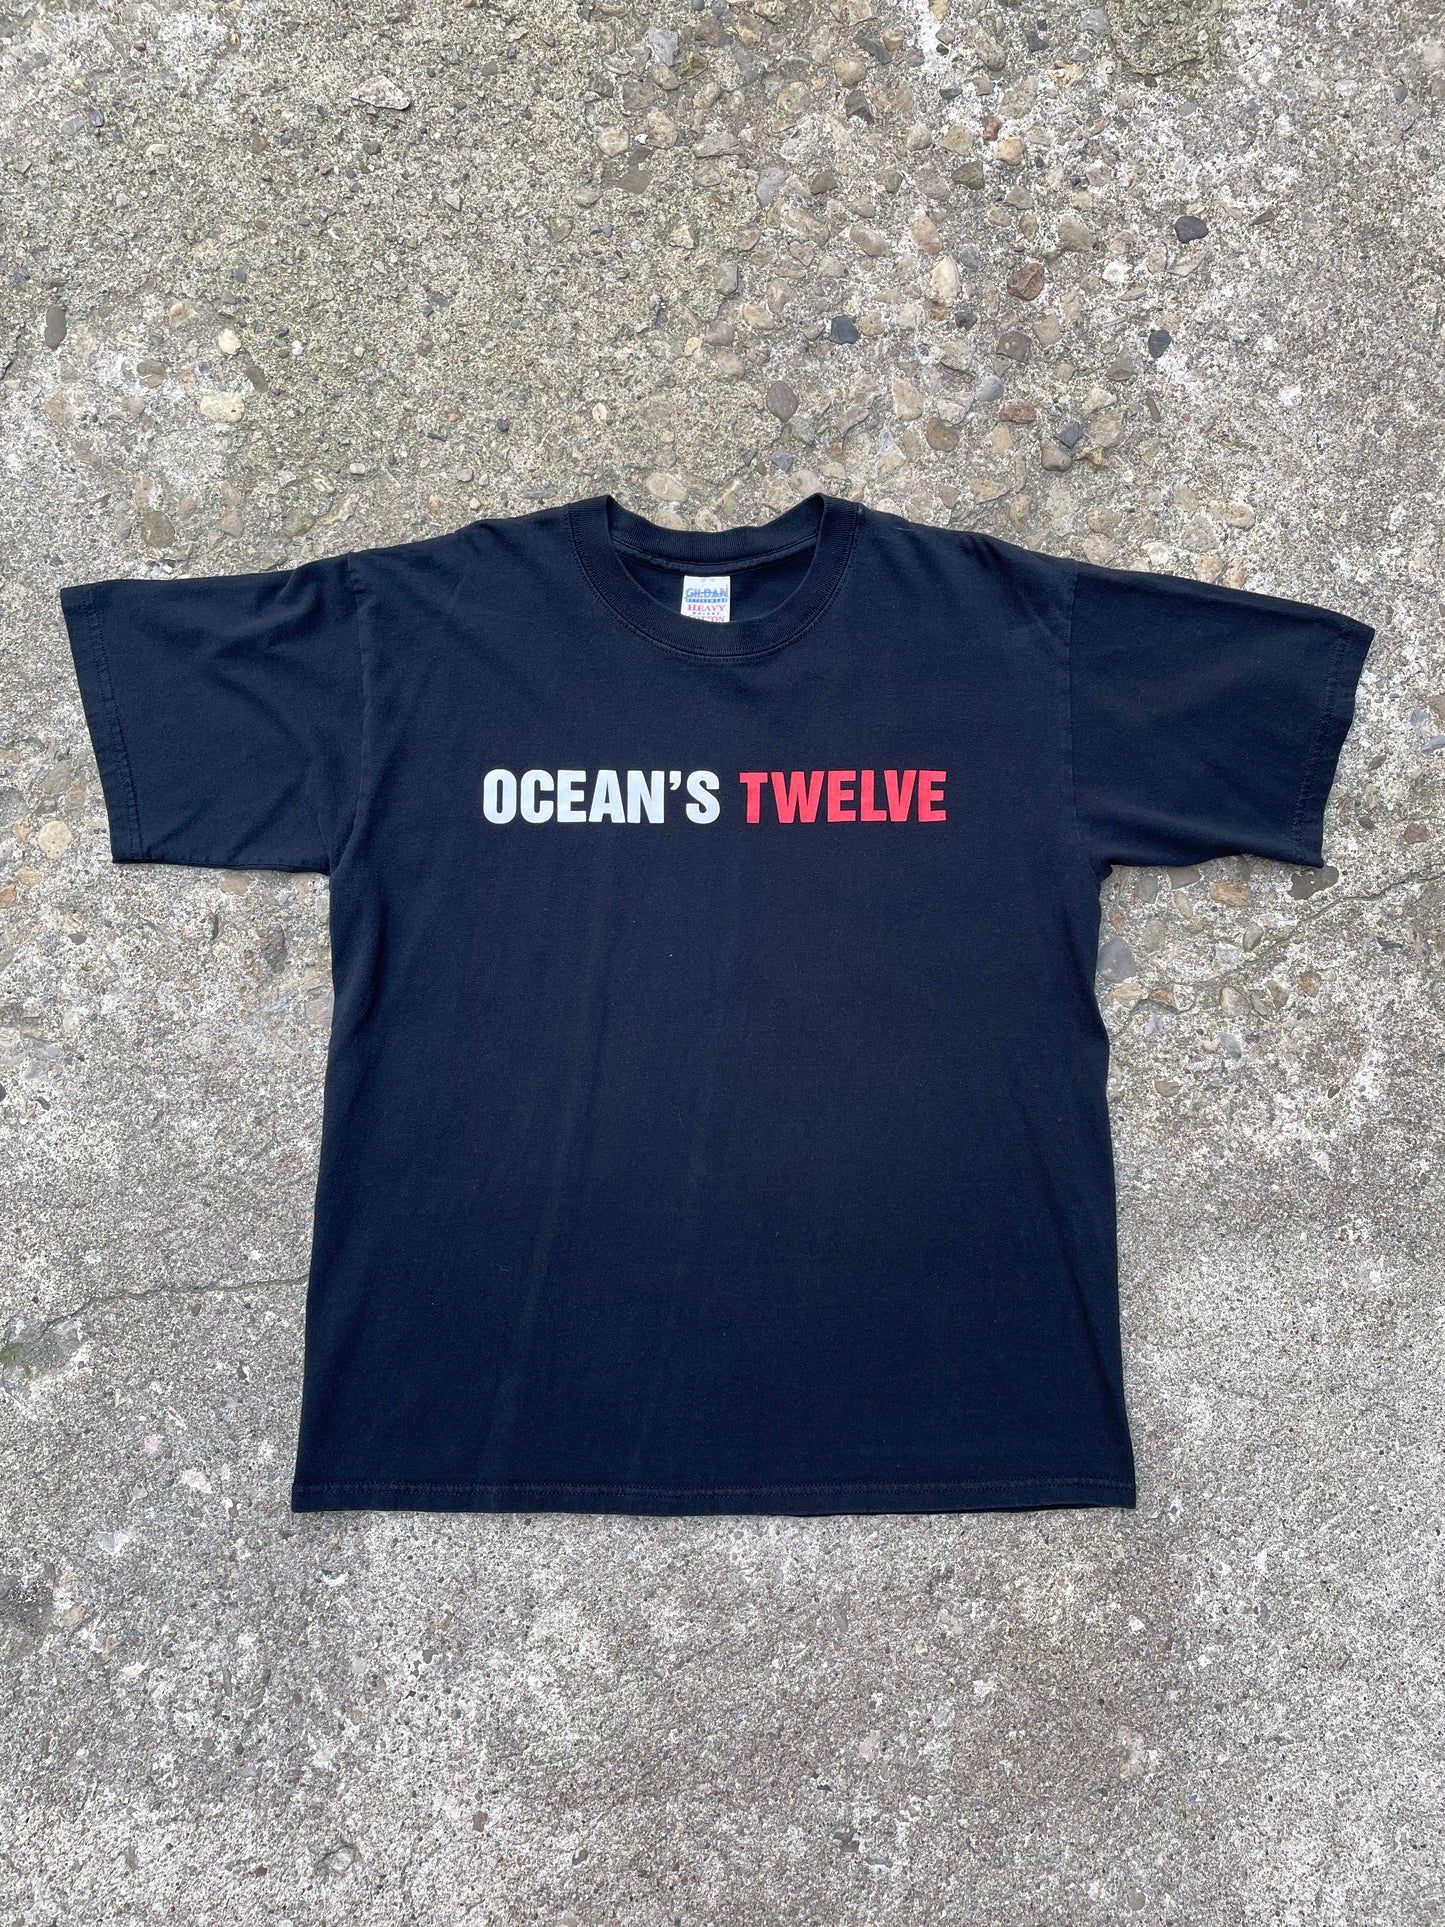 2004 Ocean's Twelve Movie Promo T-Shirt - L